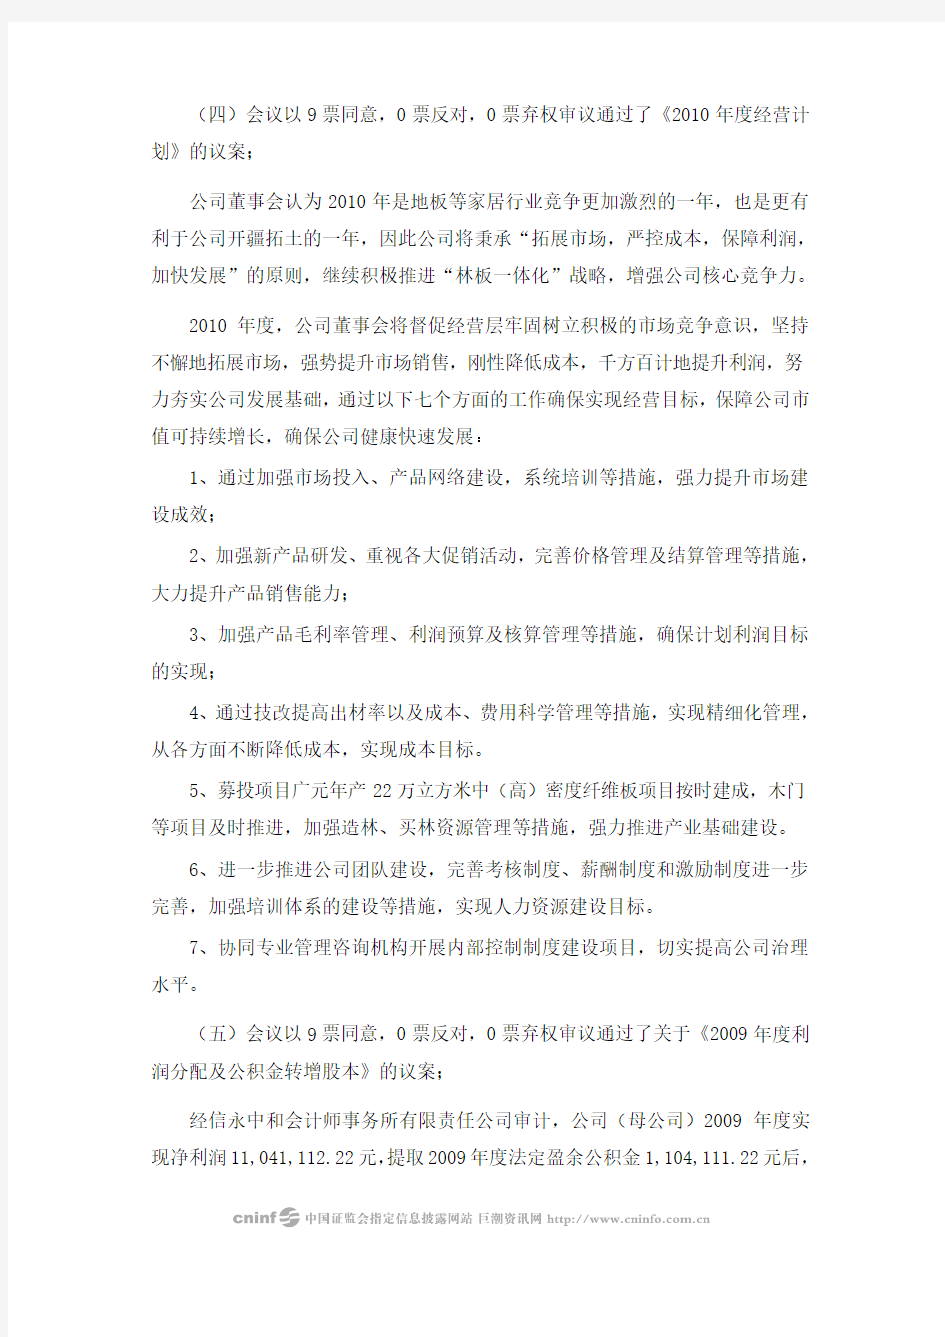 四川升达林业产业股份有限公司第二届董事会第十次会议决议公告